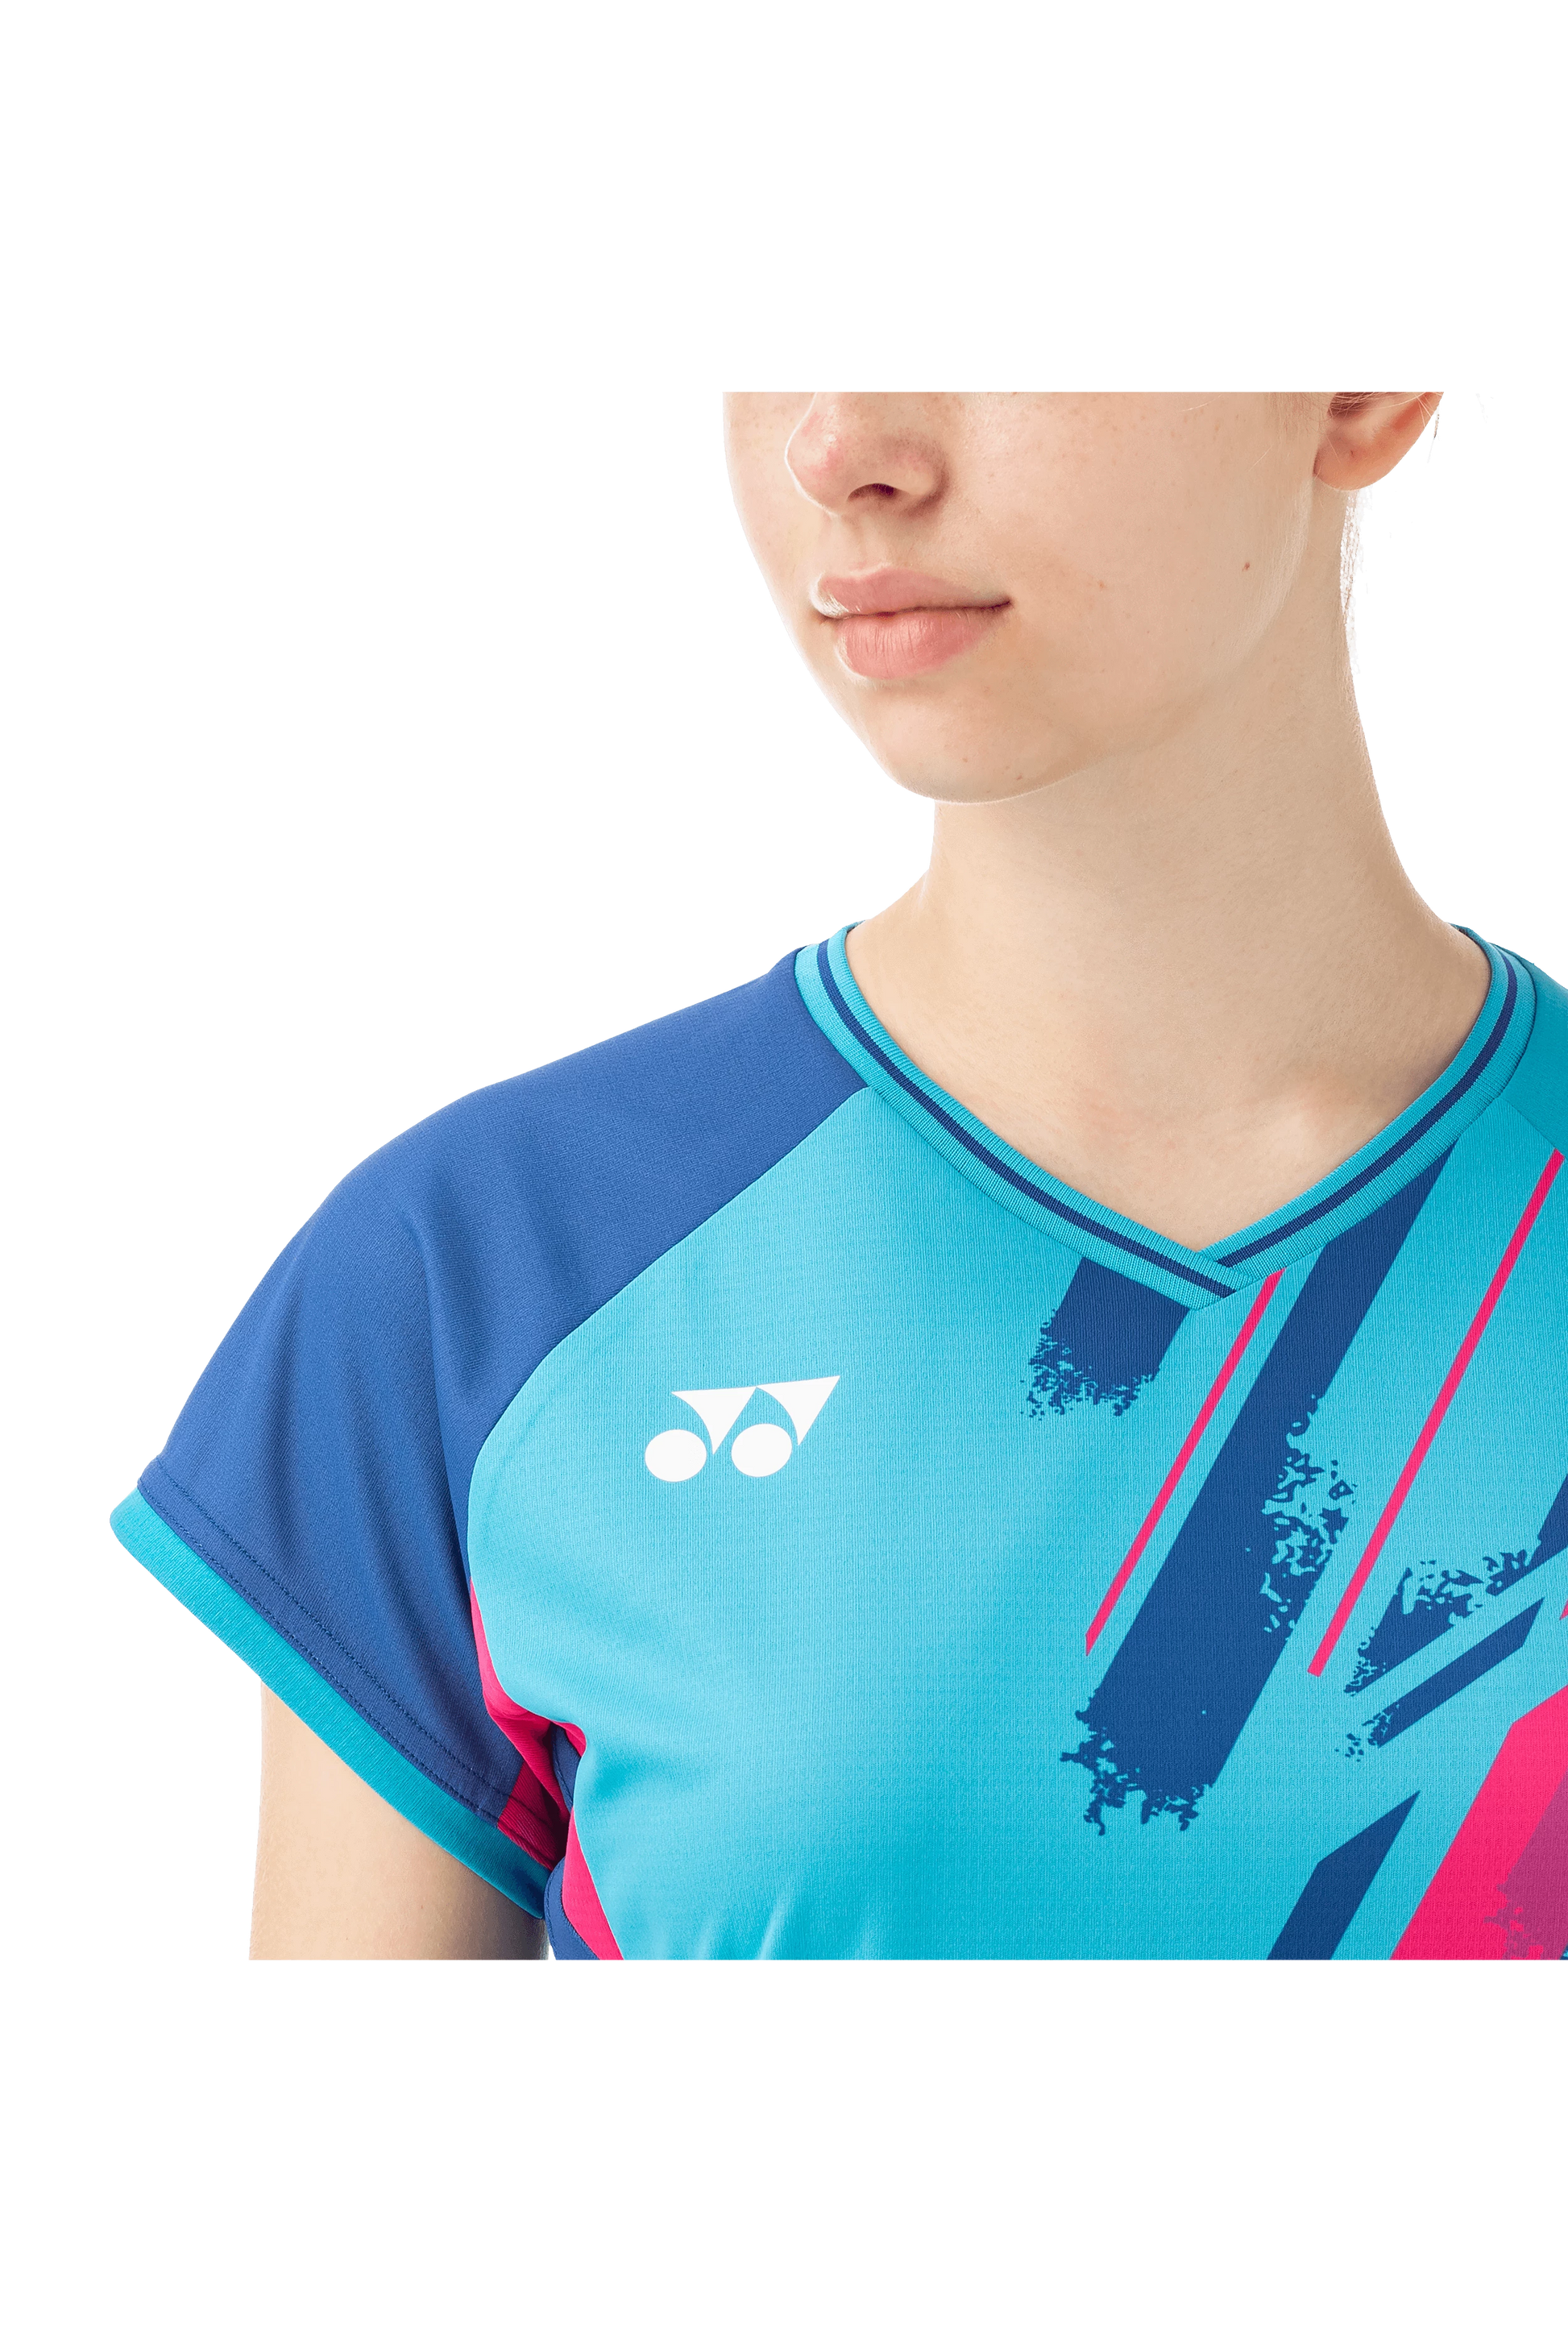 Tennis t-shirt US OPEN 2023 YONEX match badminton short sleeve t